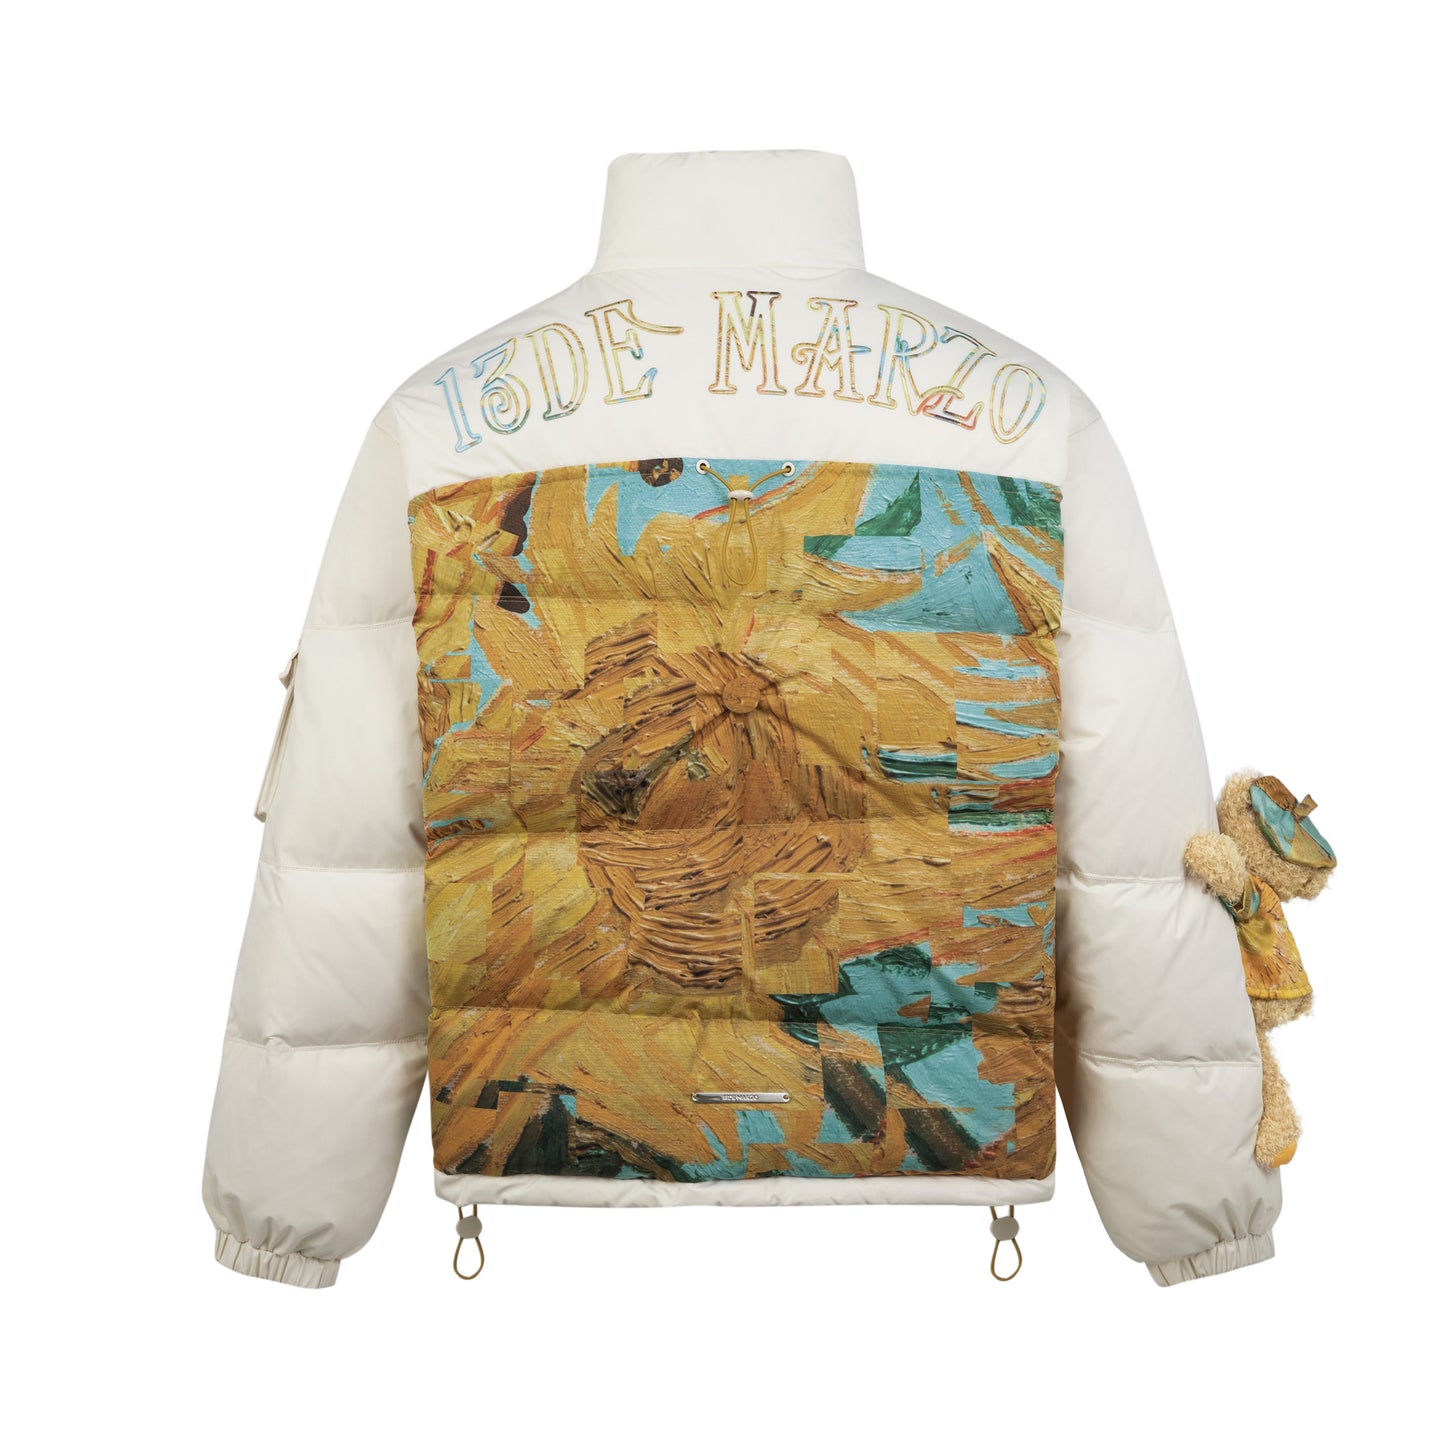 13DE MARZO Van Gogh Masterpiece Down Jacket